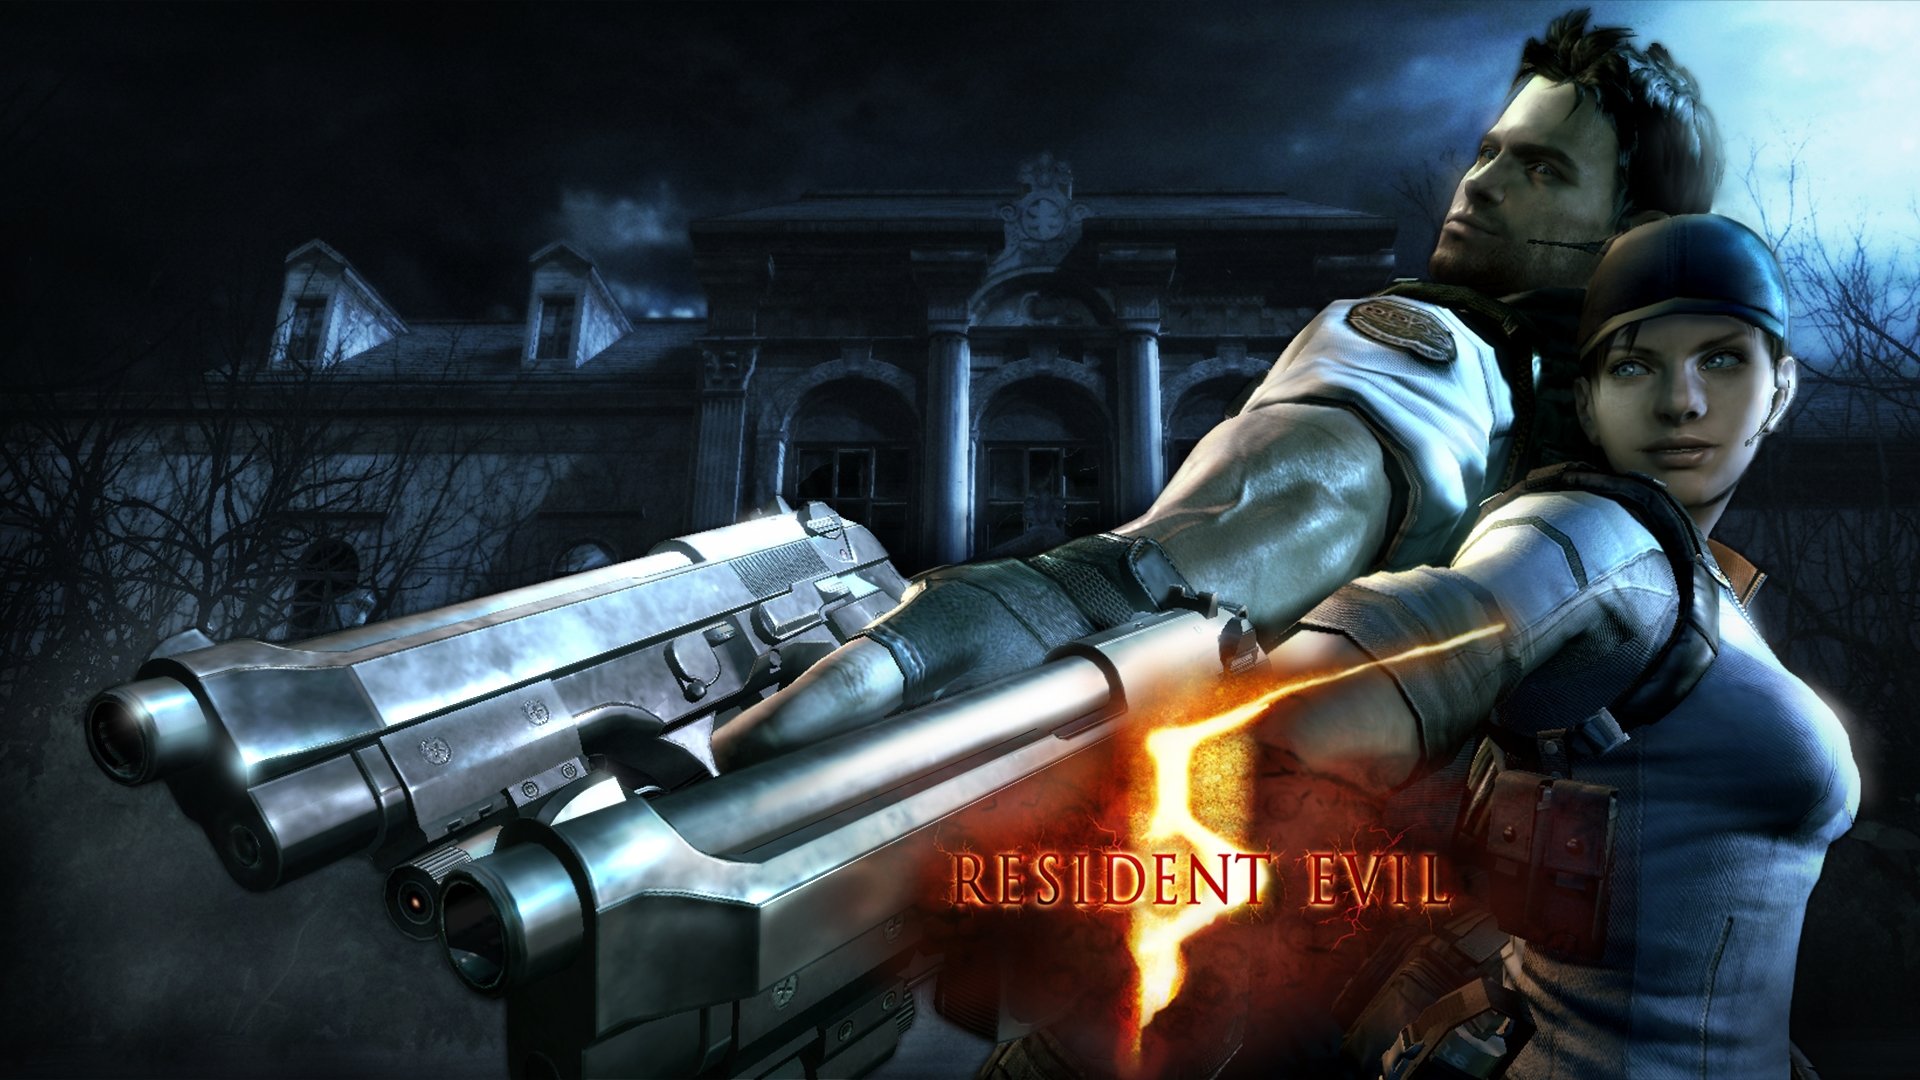 Best Resident Evil 5 wallpaper ID:50314 for High Resolution full hd desktop